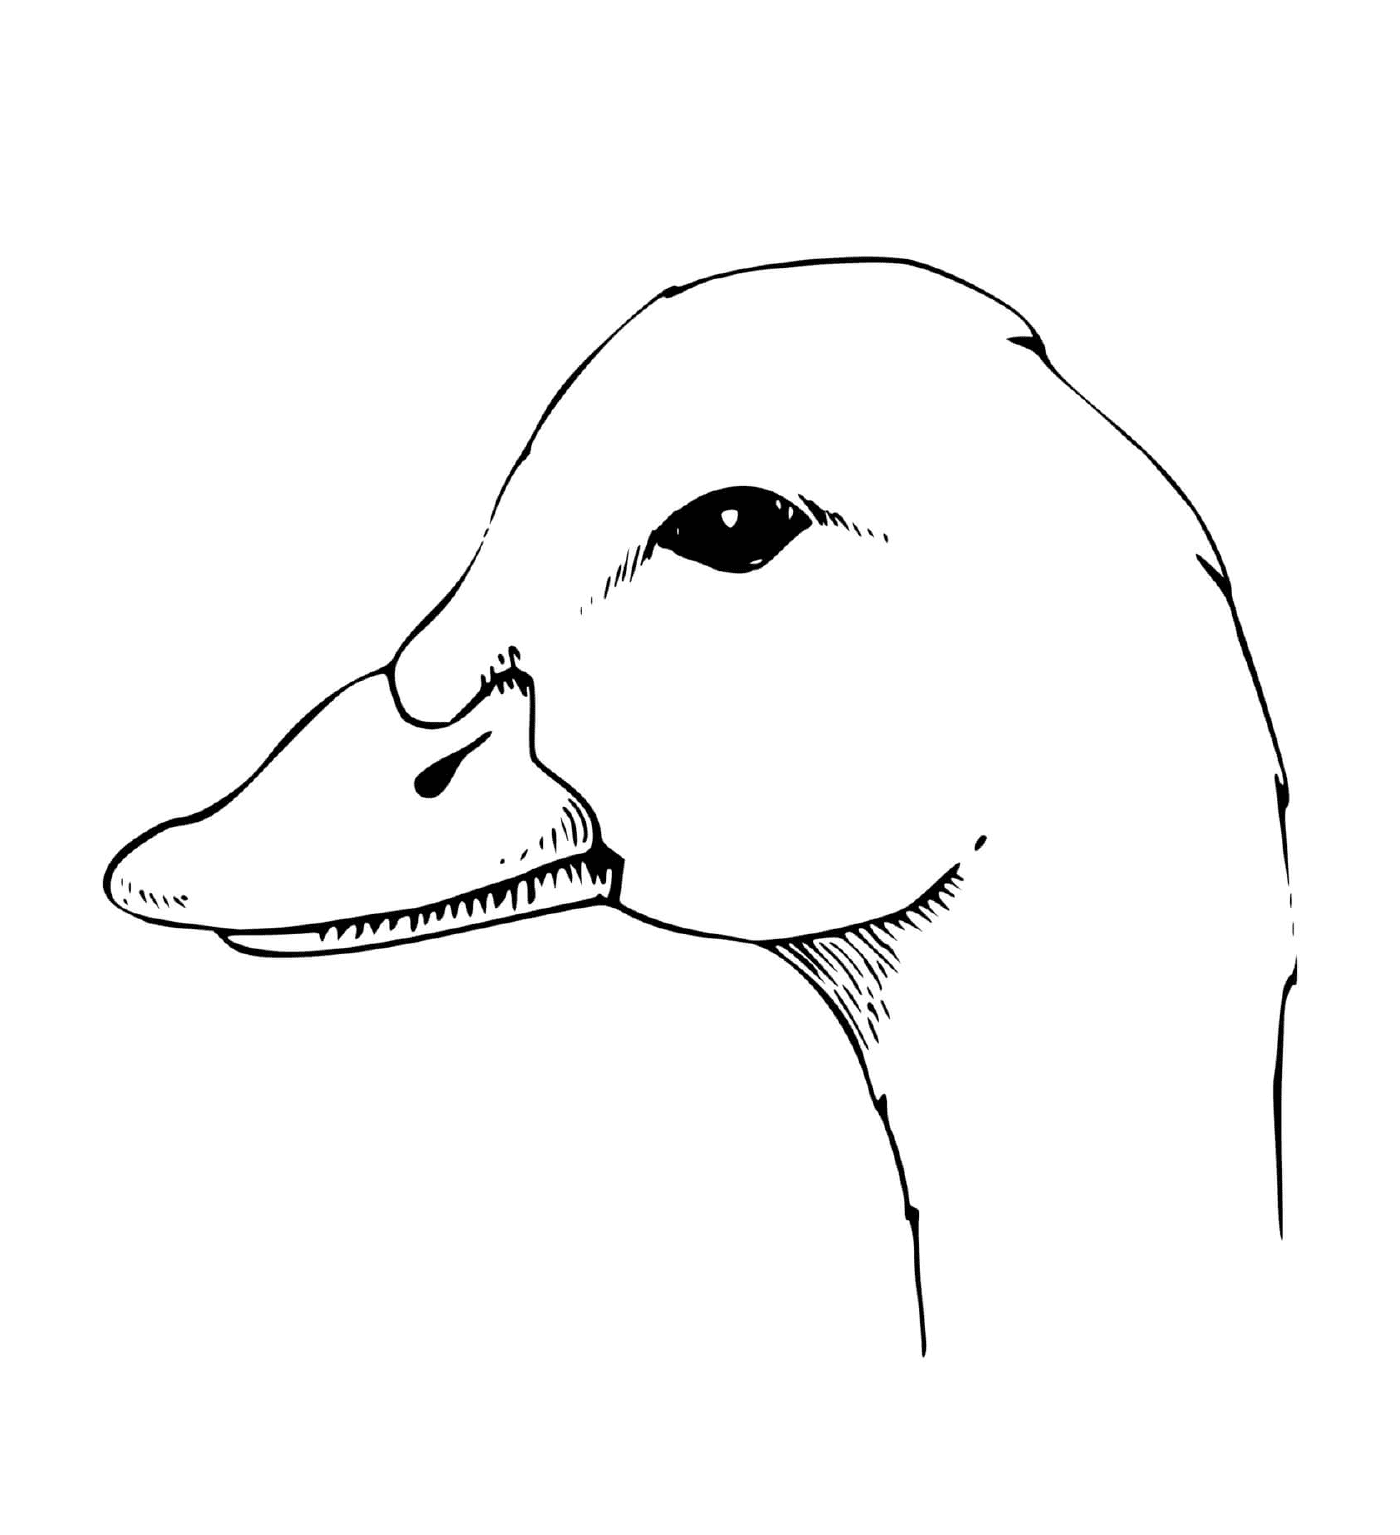  A cabeça de um pato 